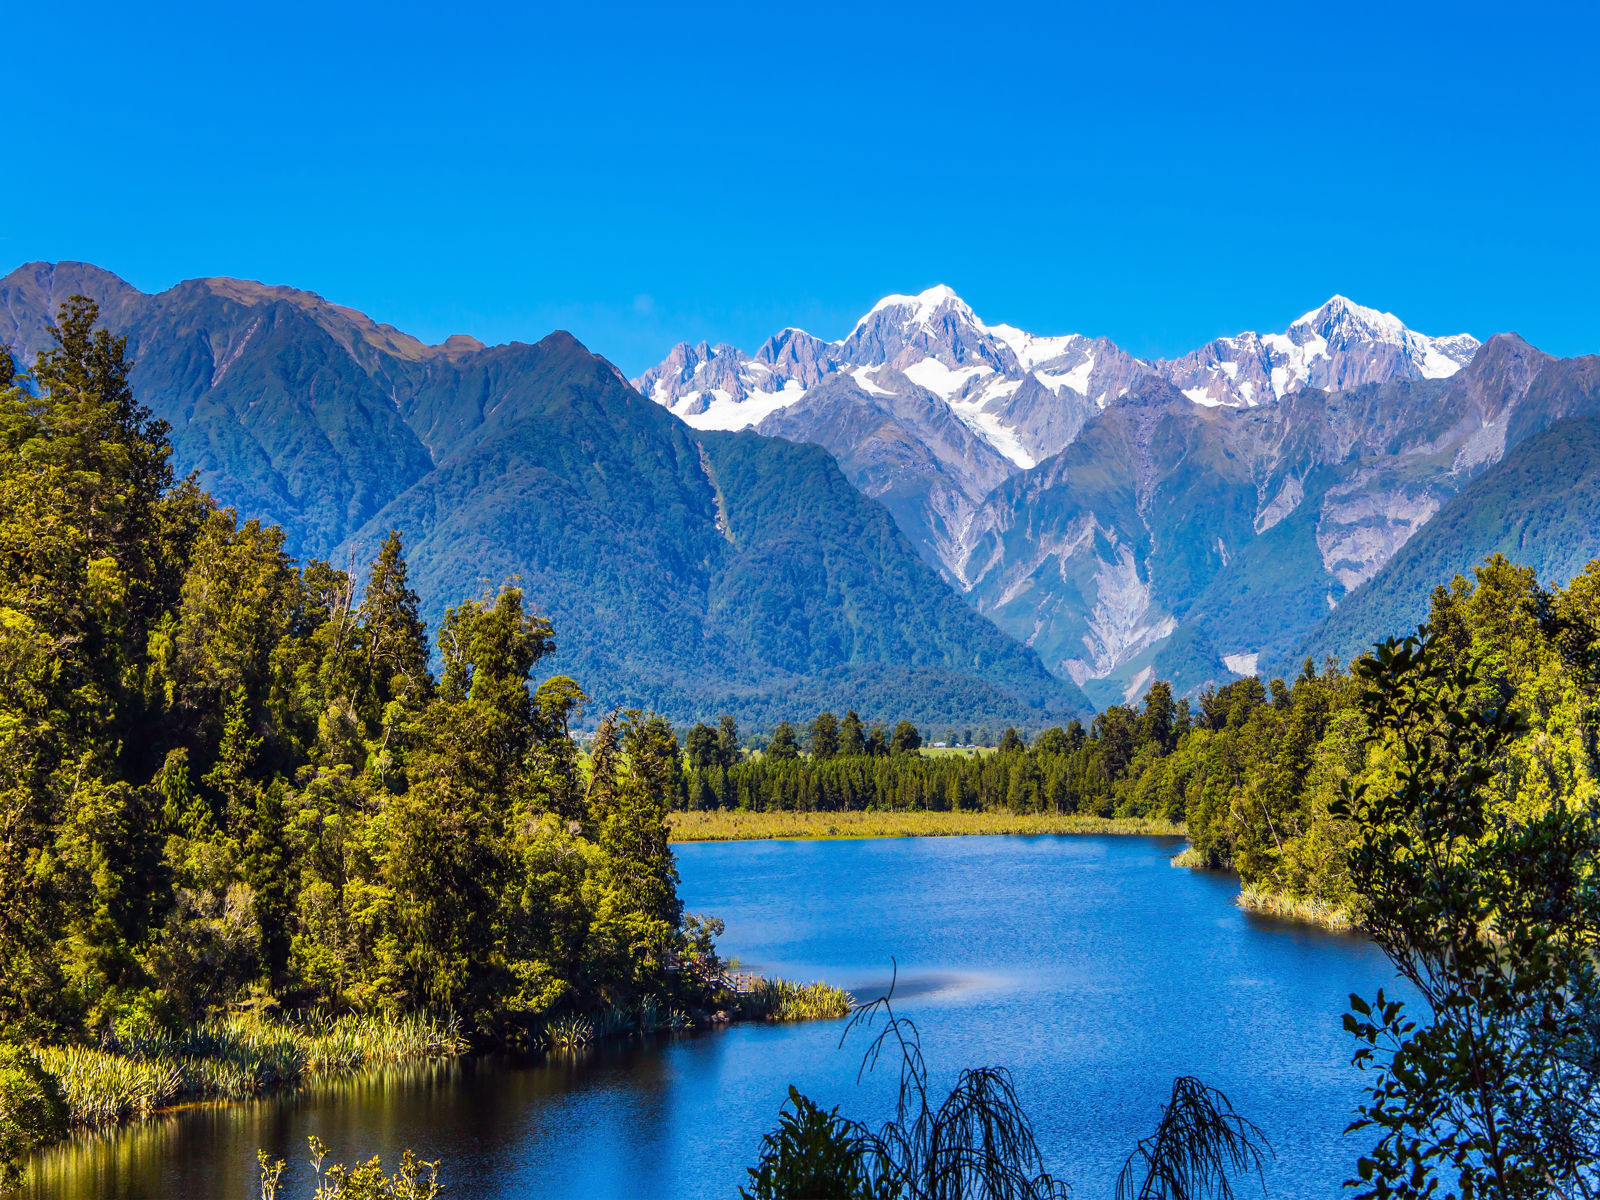 Resa till Nya Zeeland - flod genom skog i nya zeeland med vita bergstoppar i bakgrunden